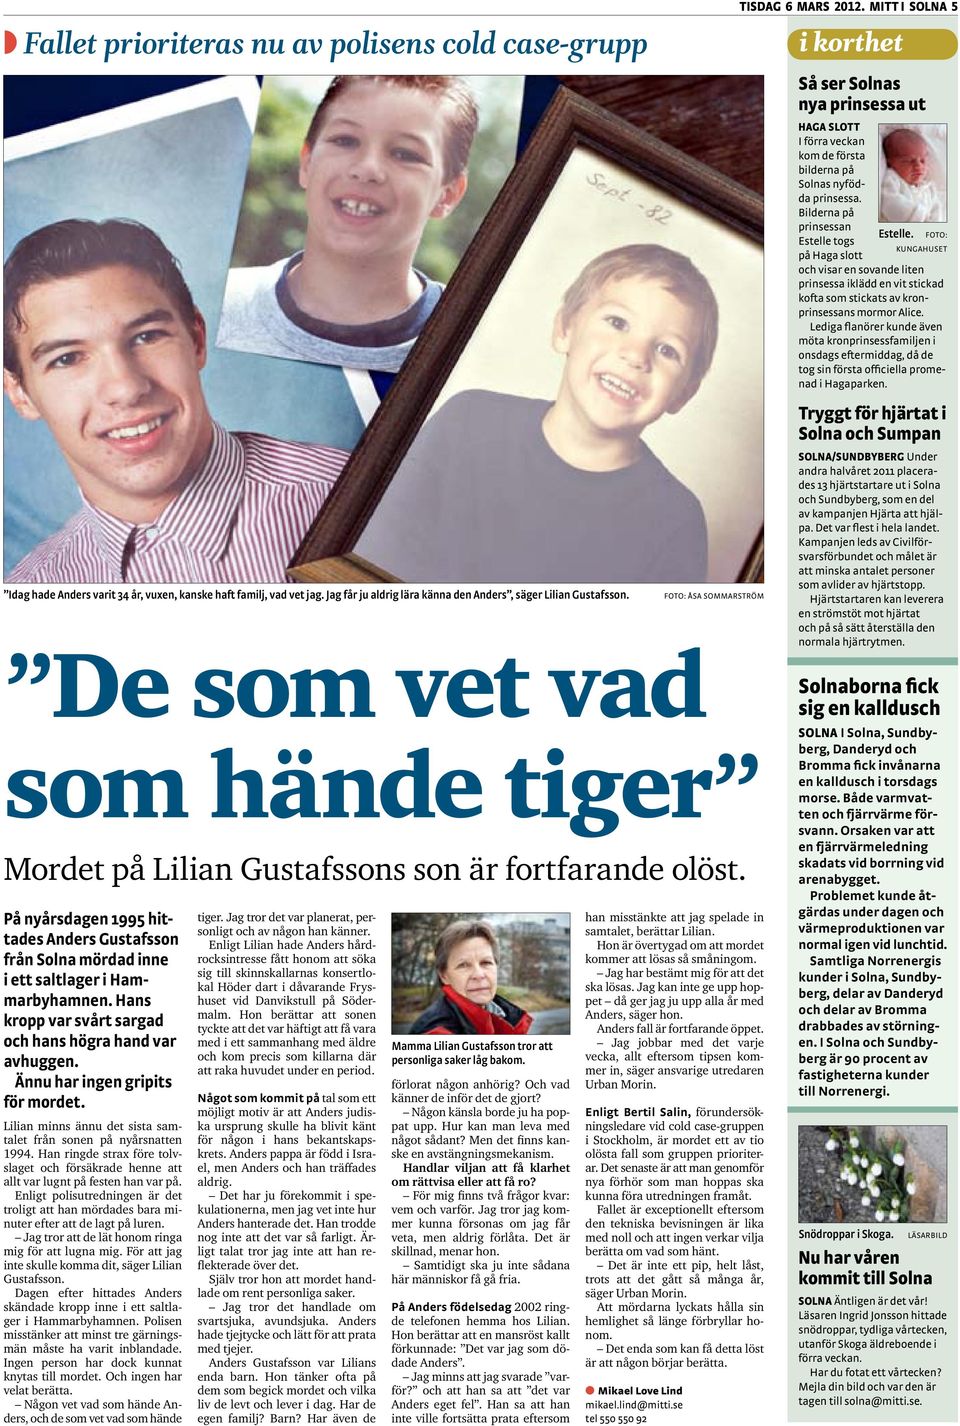 På nyårsdagen 1995 hittades Anders Gustafsson från Solna mördad inne i ett saltlager i Hammarbyhamnen. Hans kropp var svårt sargad och hans högra hand var avhuggen. Ännu har ingen gripits för mordet.